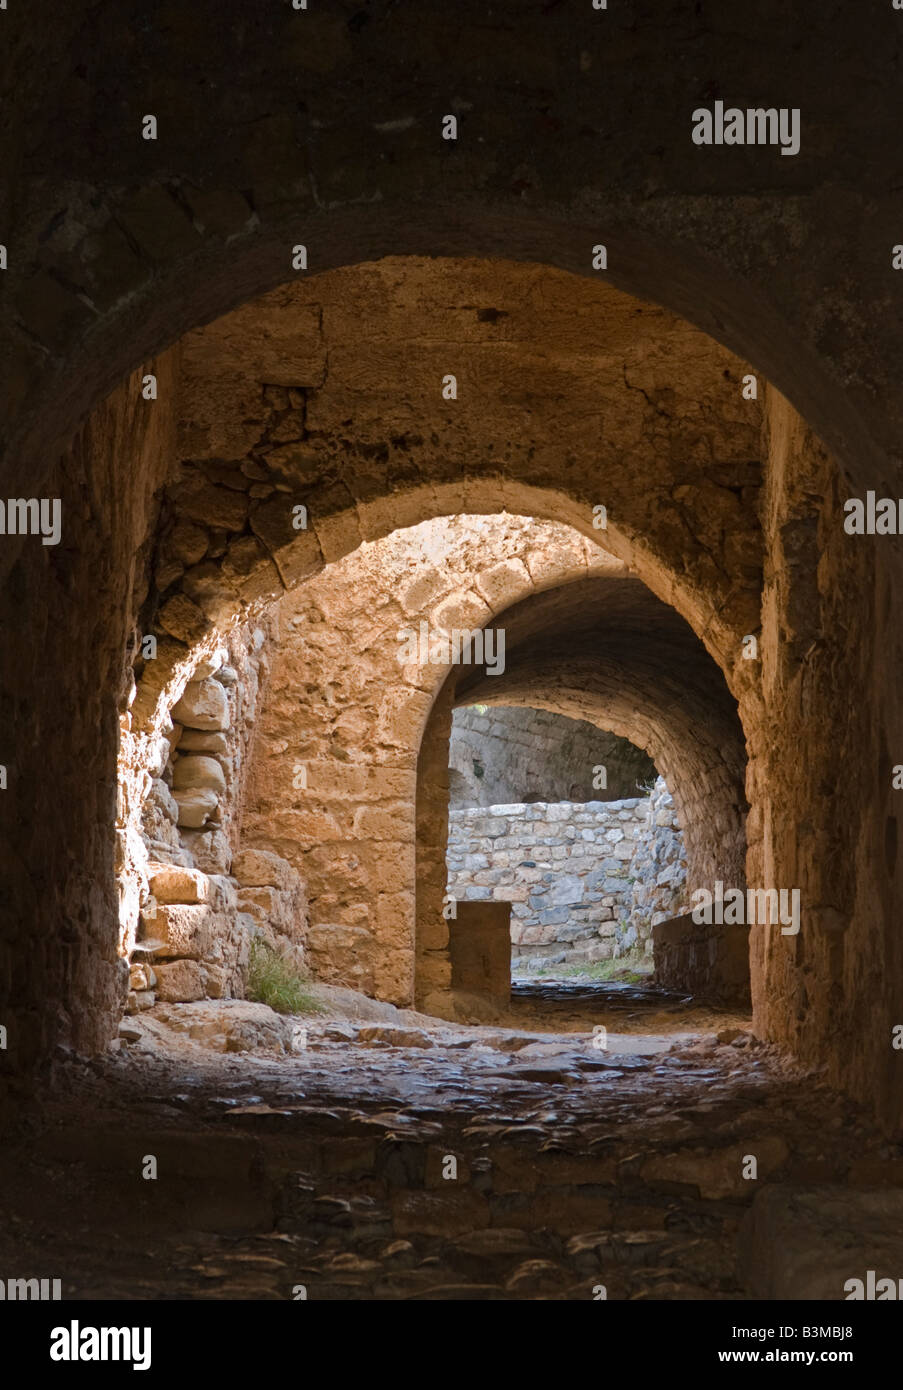 Die krummen Tunneleingang zur Zitadelle oberhalb der alten byzantinischen Monemvasia in Lakonia südlichen Peloponnes Griechenland Stockfoto